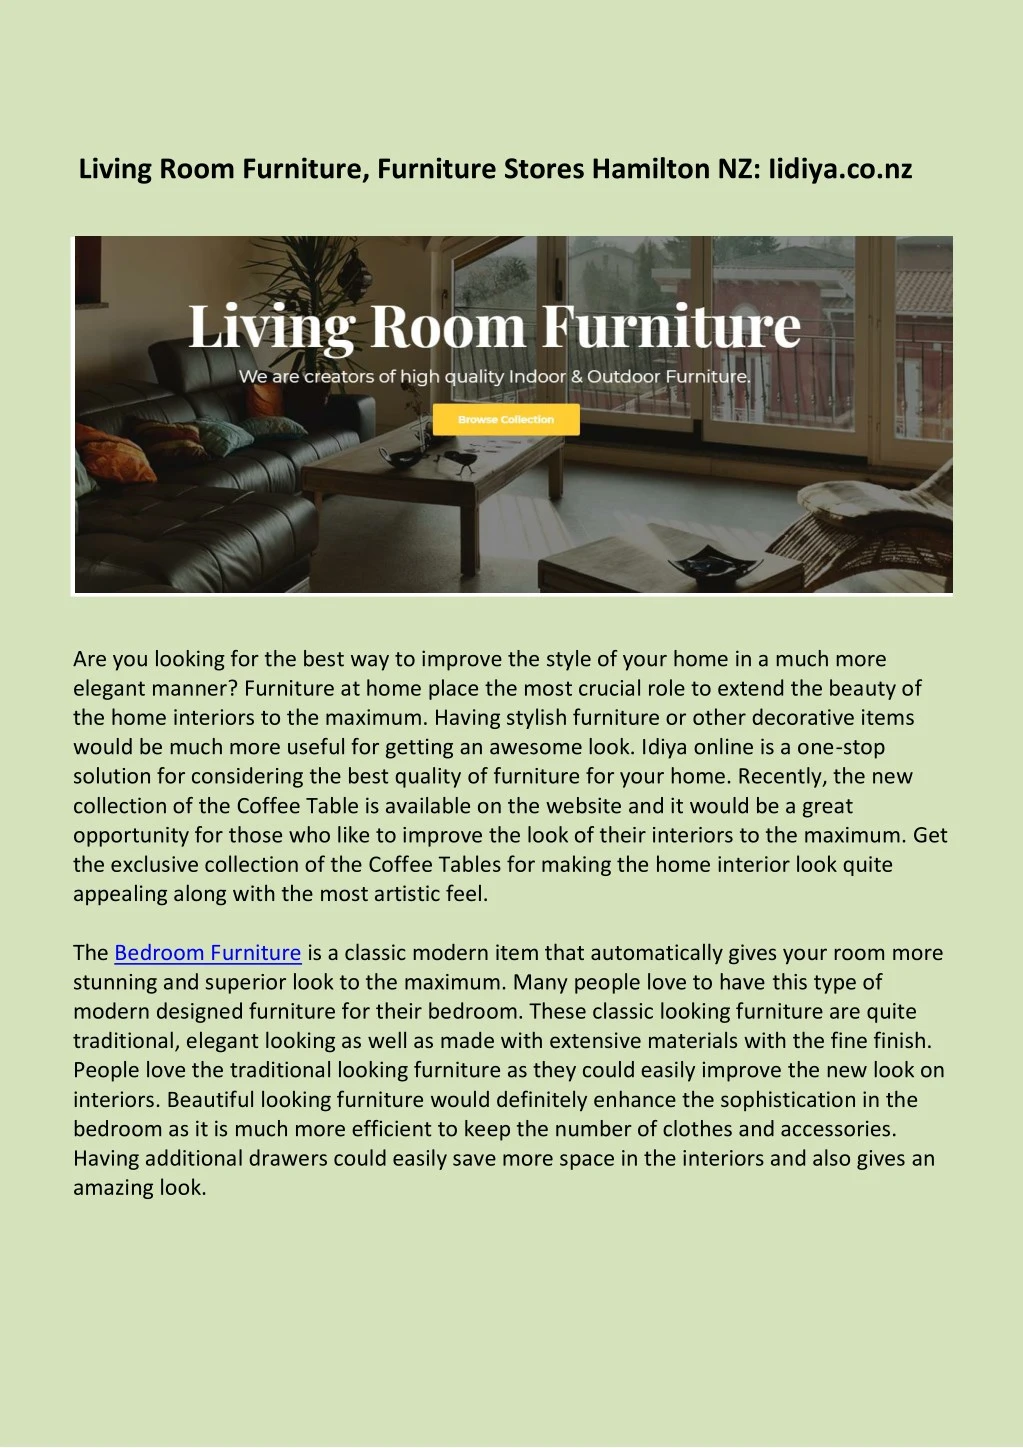 living room furniture furniture stores hamilton